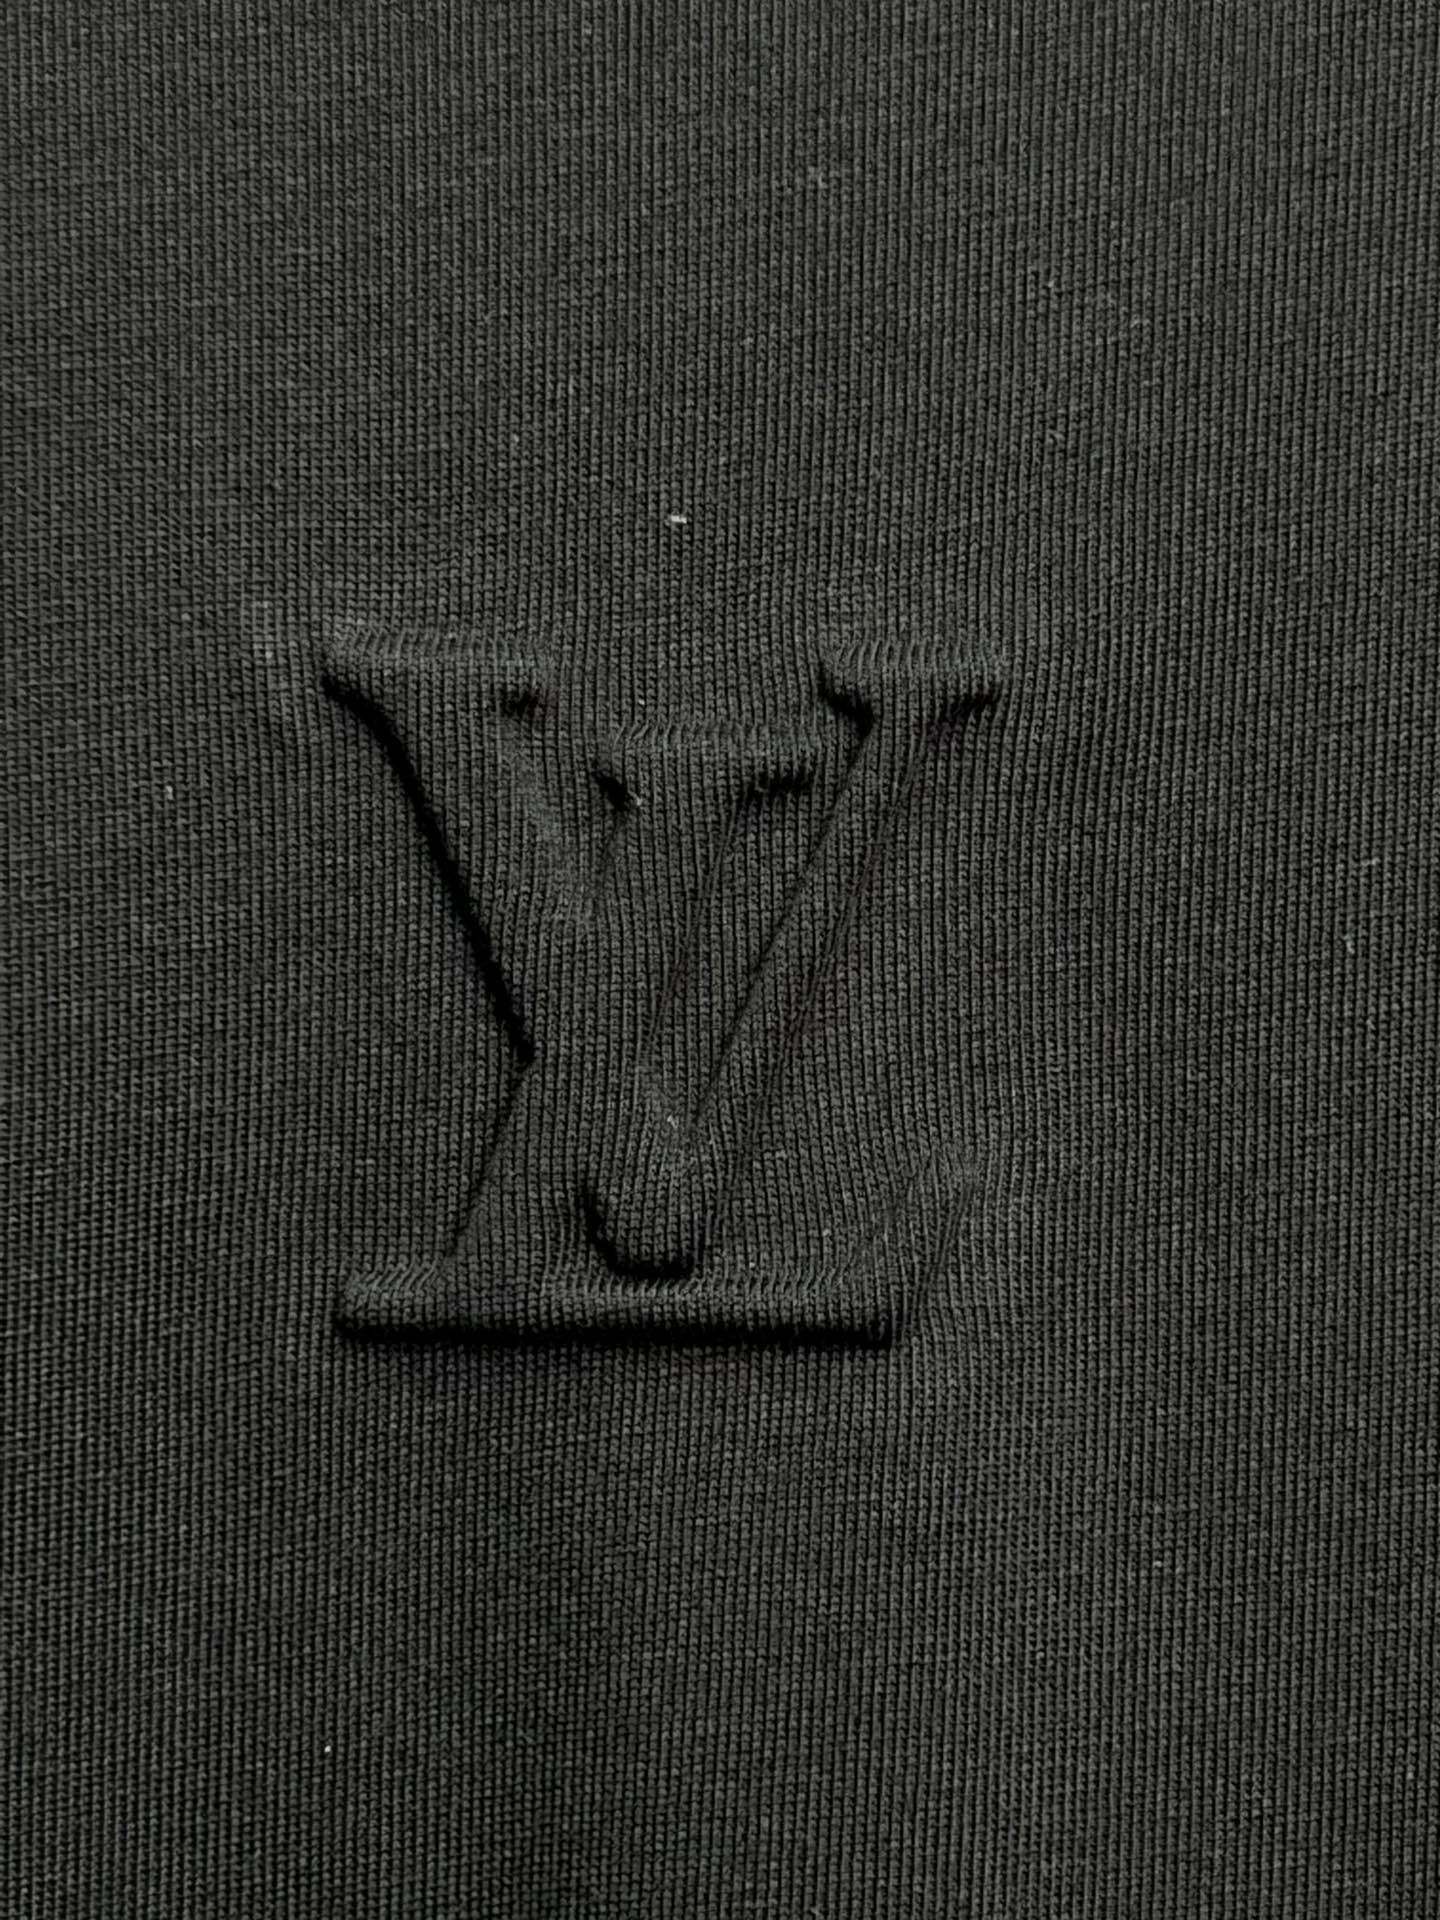 ルイヴィトン ぬいぐるみ tシャツコピー トップス ファッション 短袖 通気性いい ブラック_6